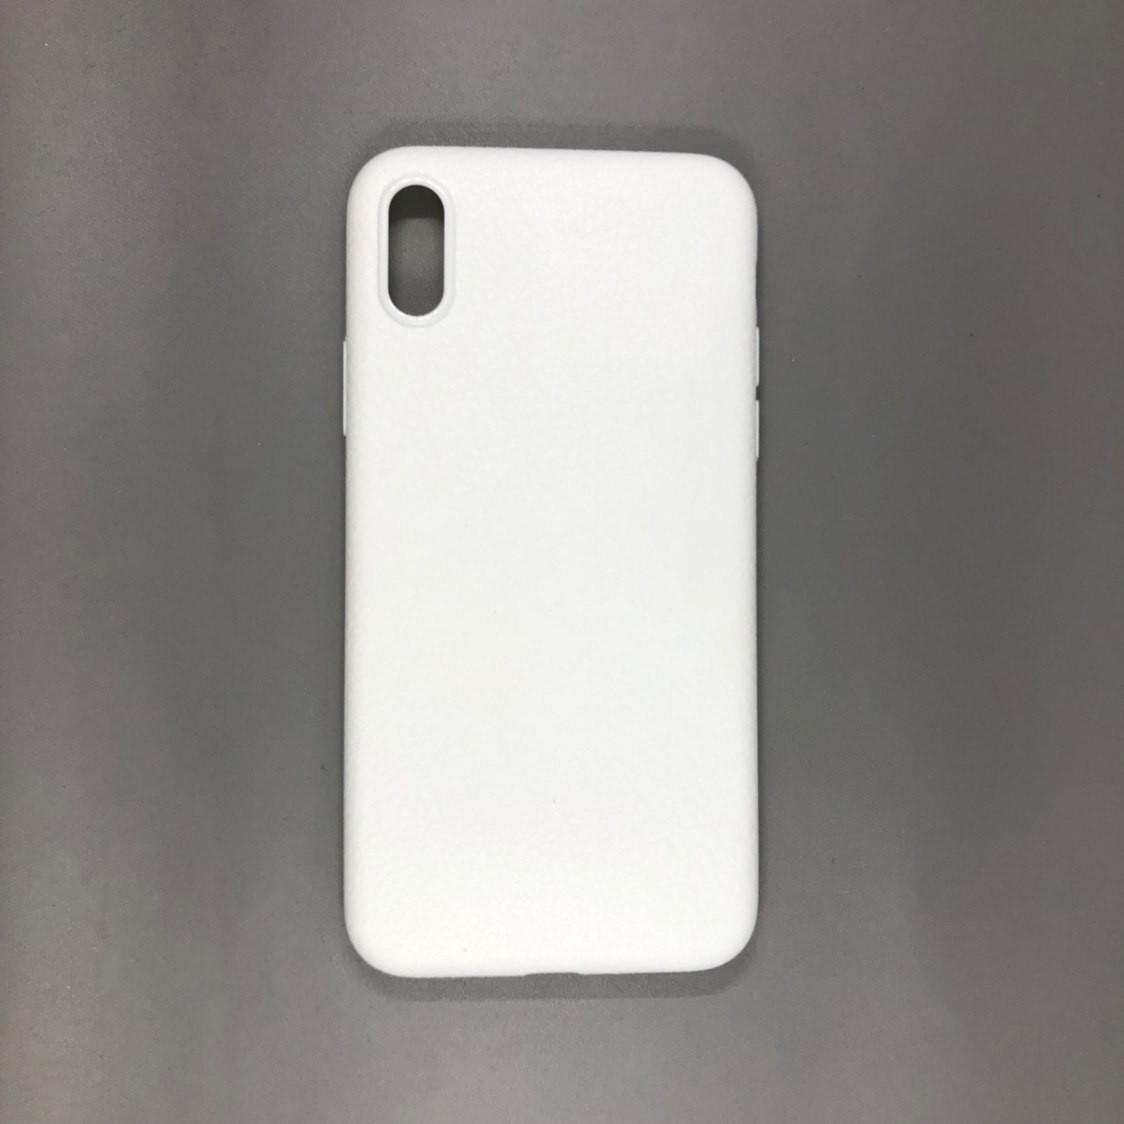 iPhone X Plastic White